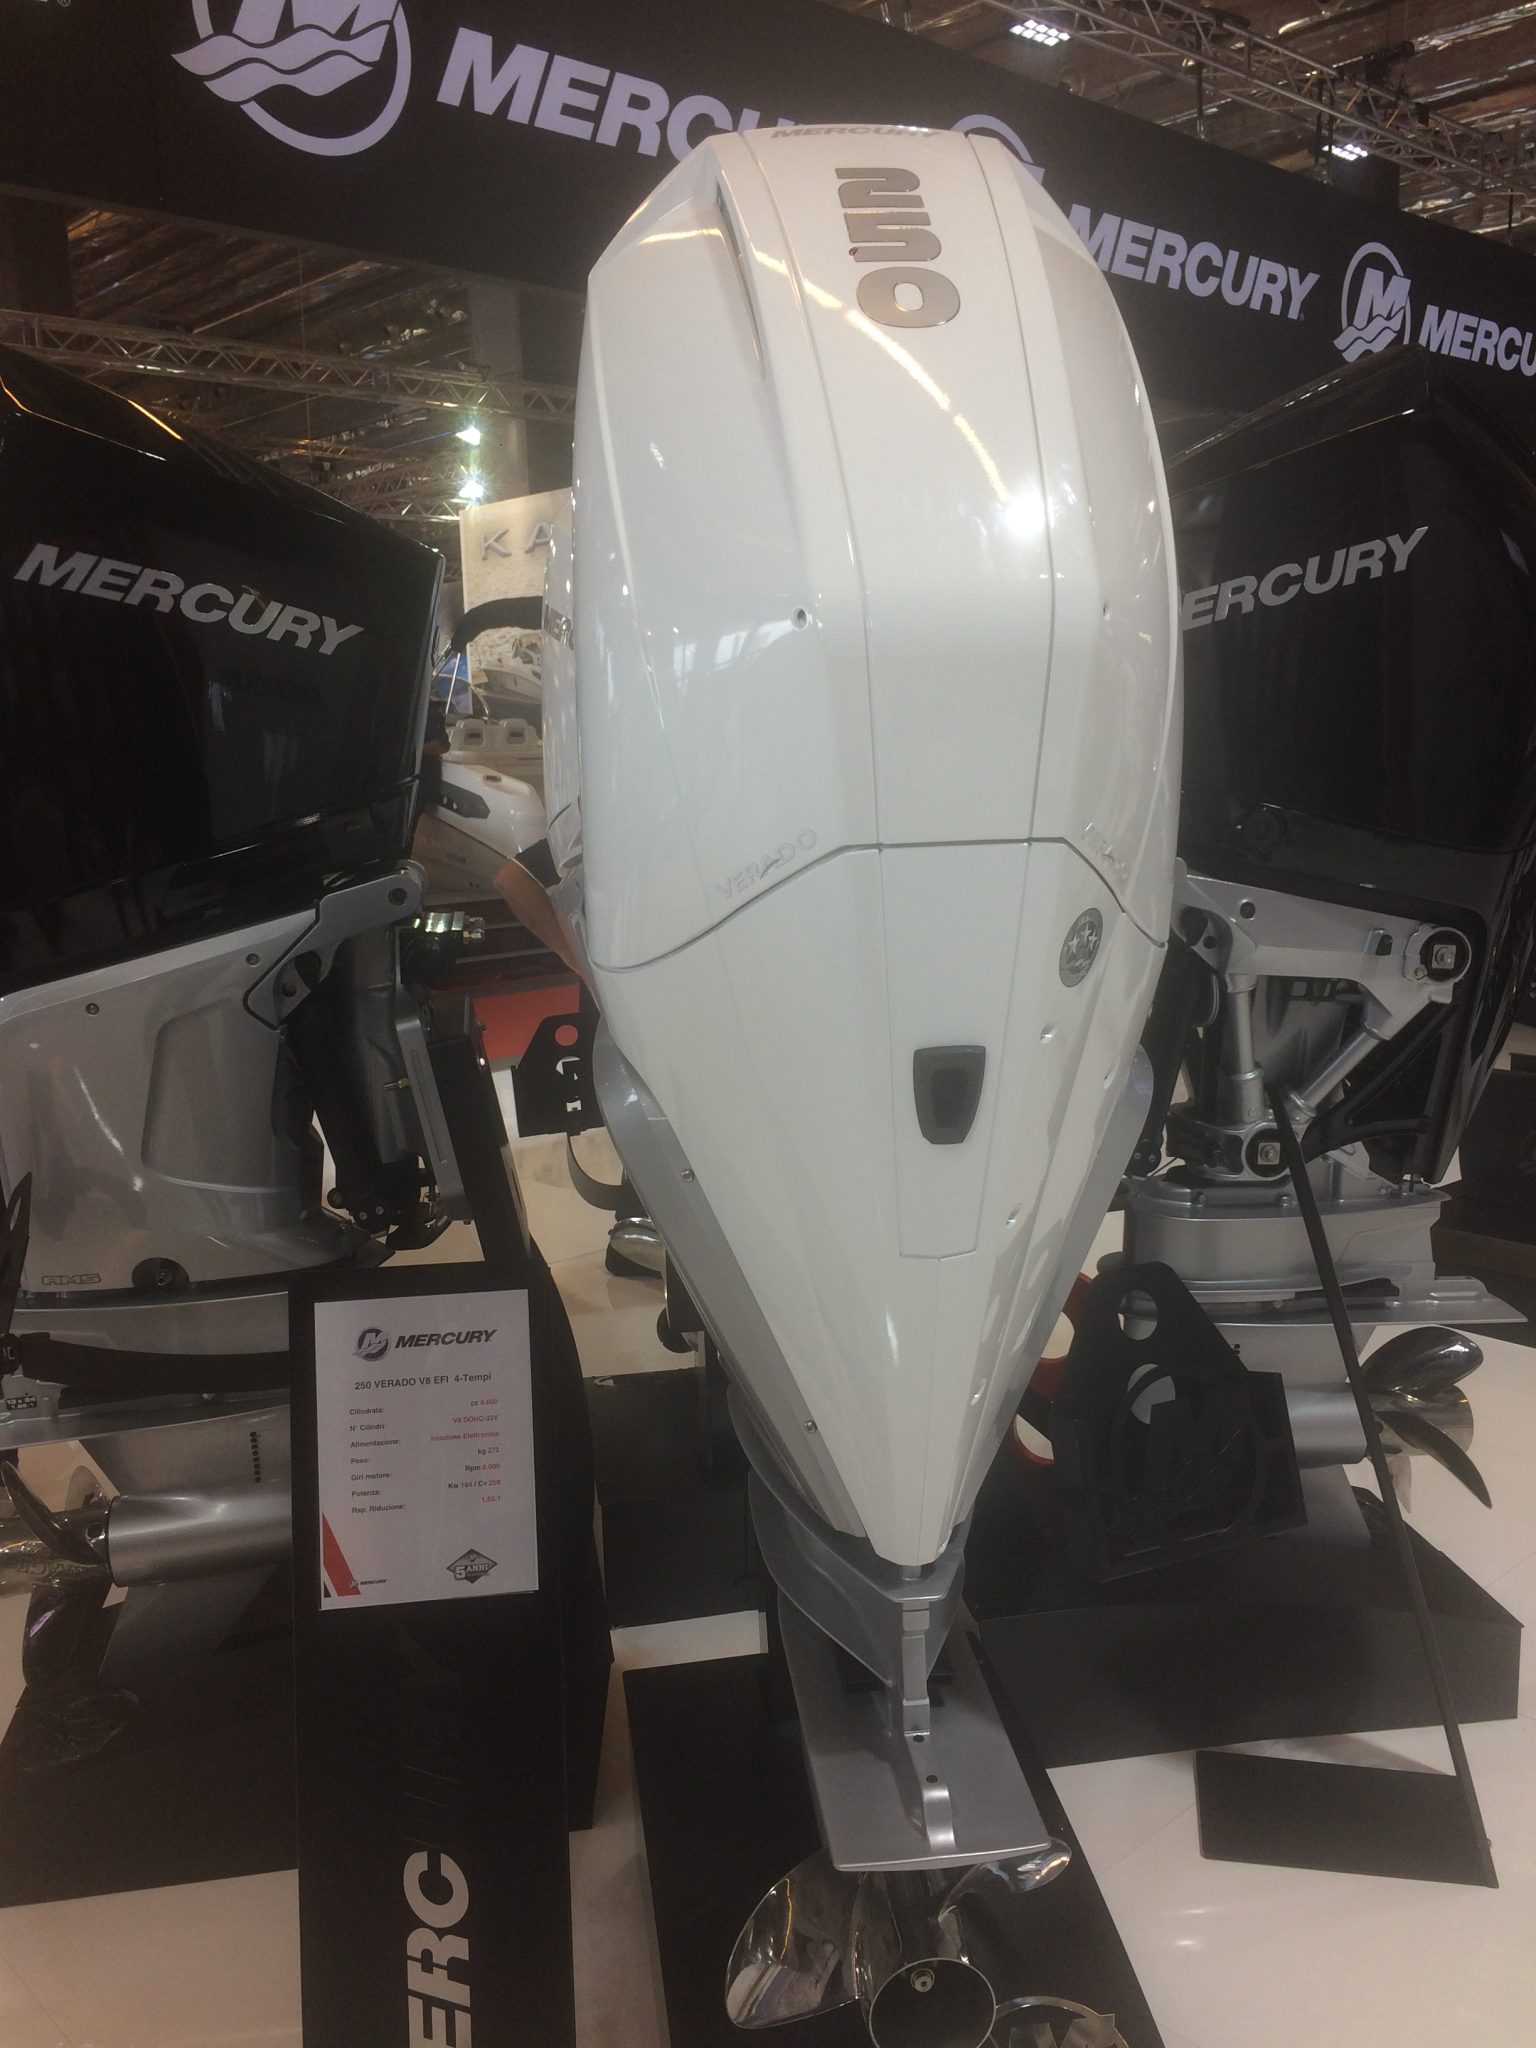 Motore Mercury 250 novità del 58 Salone Nautico